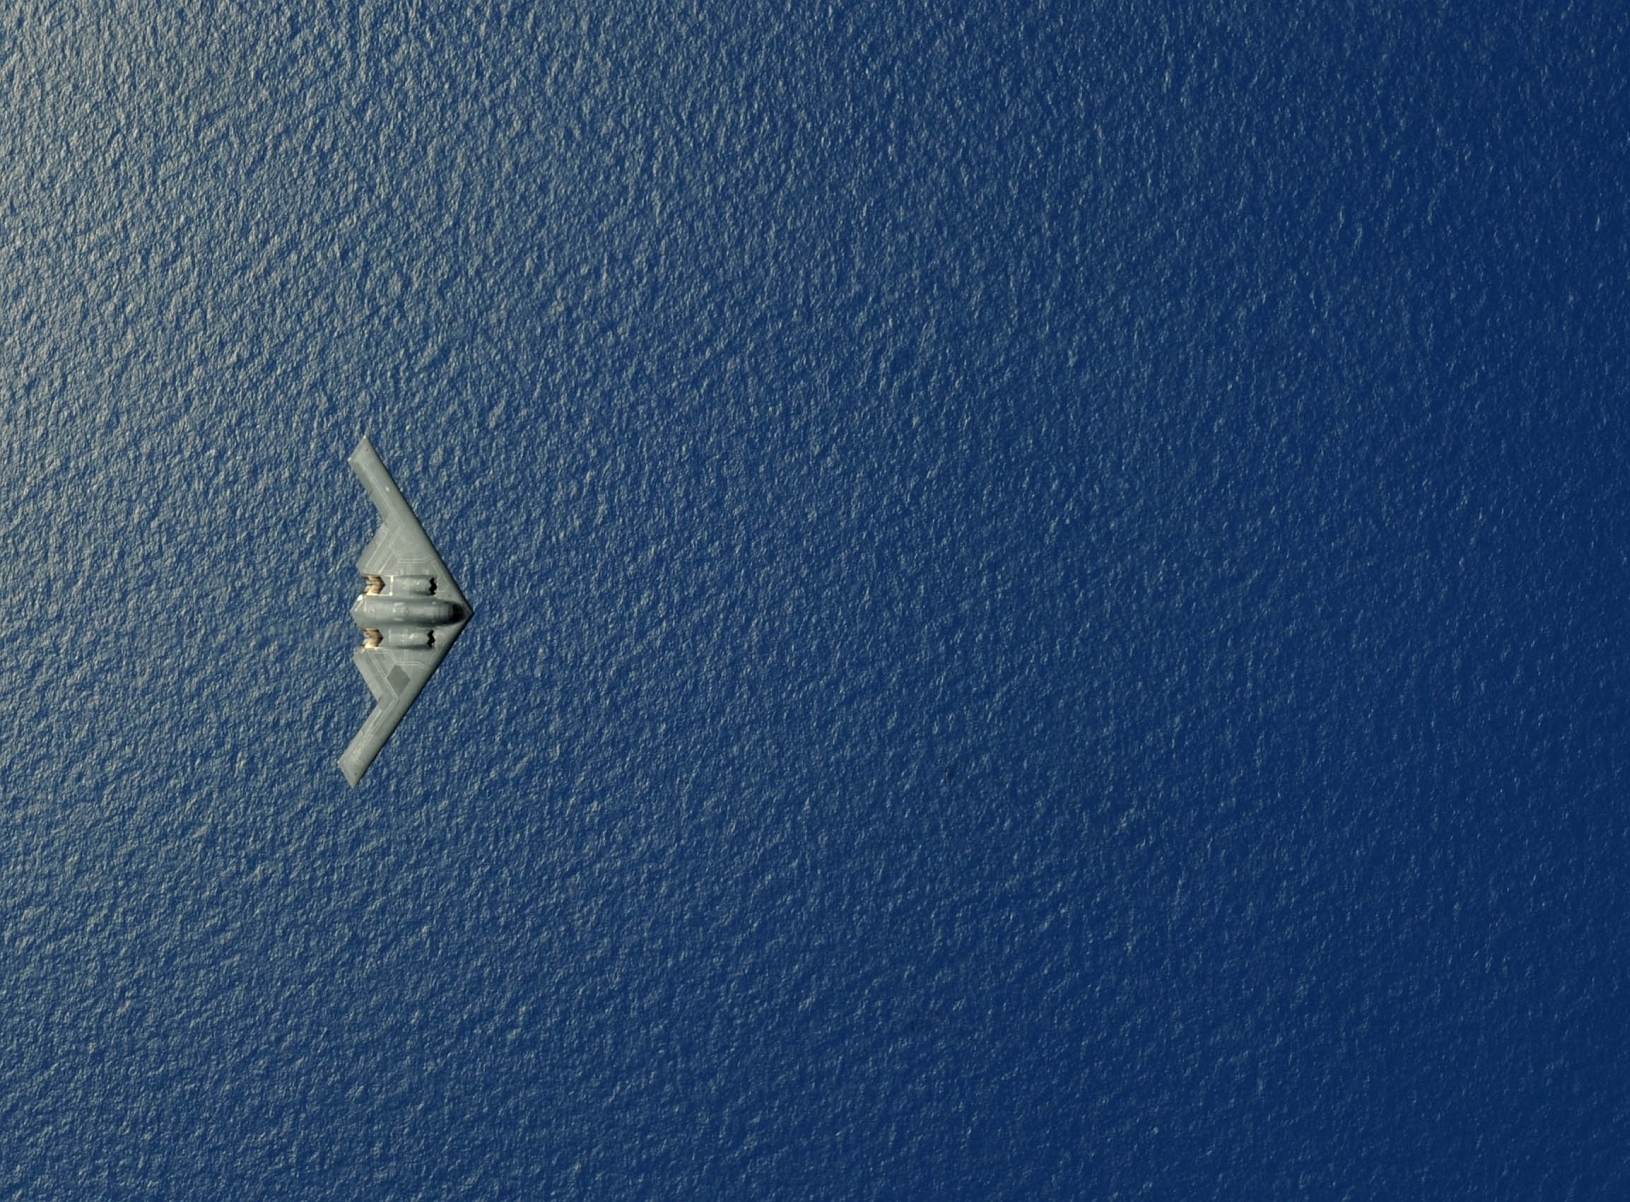 El 12 de mayo de 2009 Christopher Bush, un piloto de la fuerza aerea de los Estados Unidos, miró hacia abajo y tomó esta espectacular foto del Bombardero invisible B-2 Spirit.